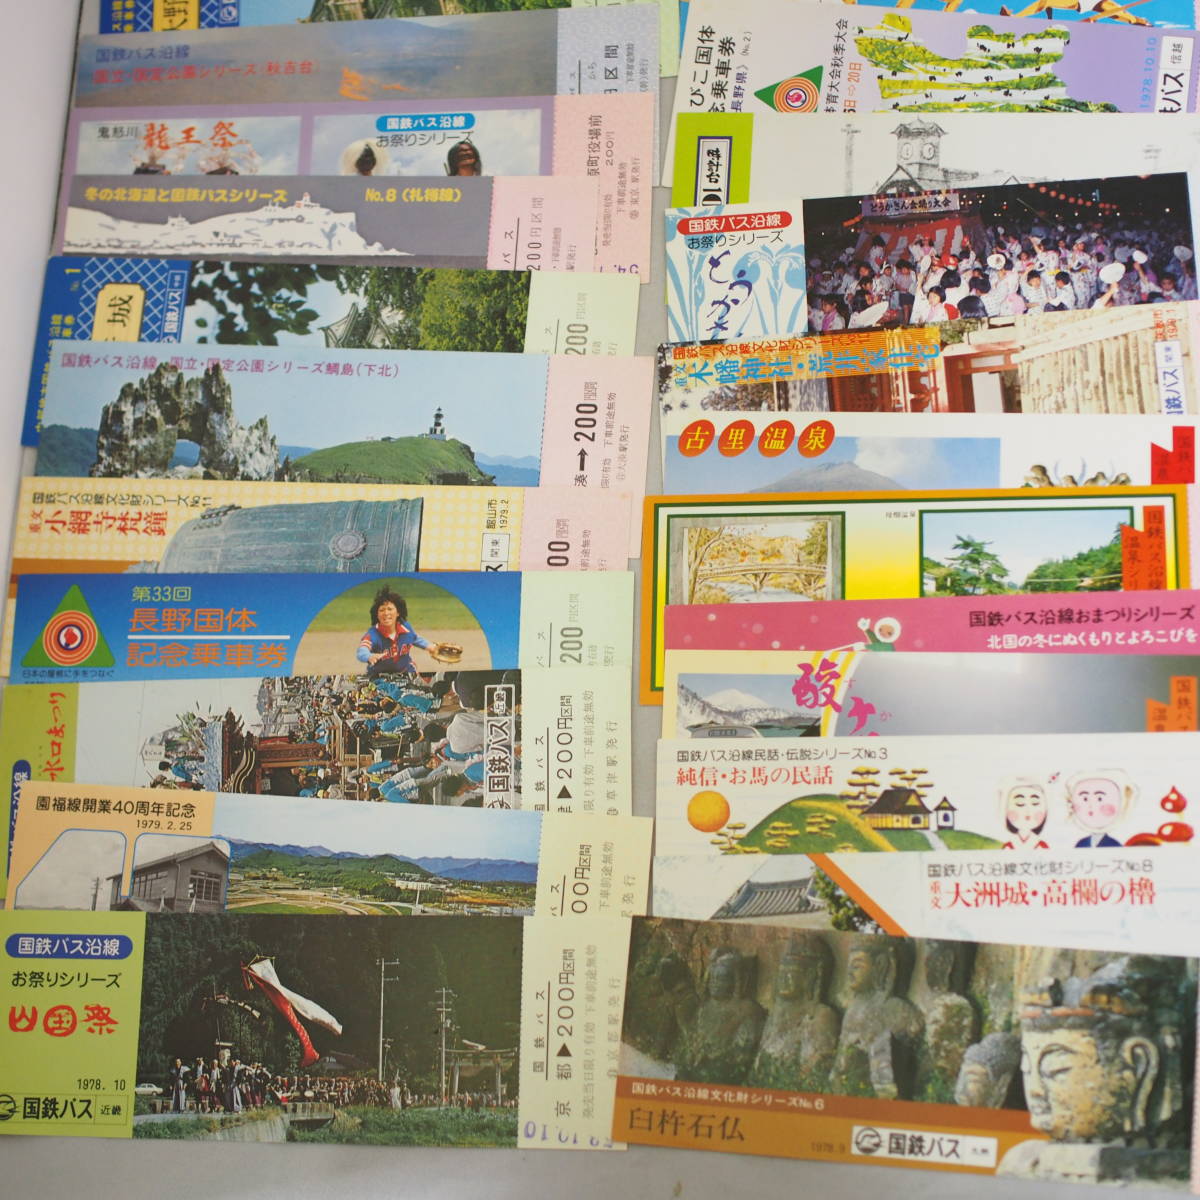  National Railways автобус память пассажирский билет много суммировать Showa подлинная вещь Hokkaido Tohoku Сикоку и т.п. текущее состояние товар контрольный номер 432-1